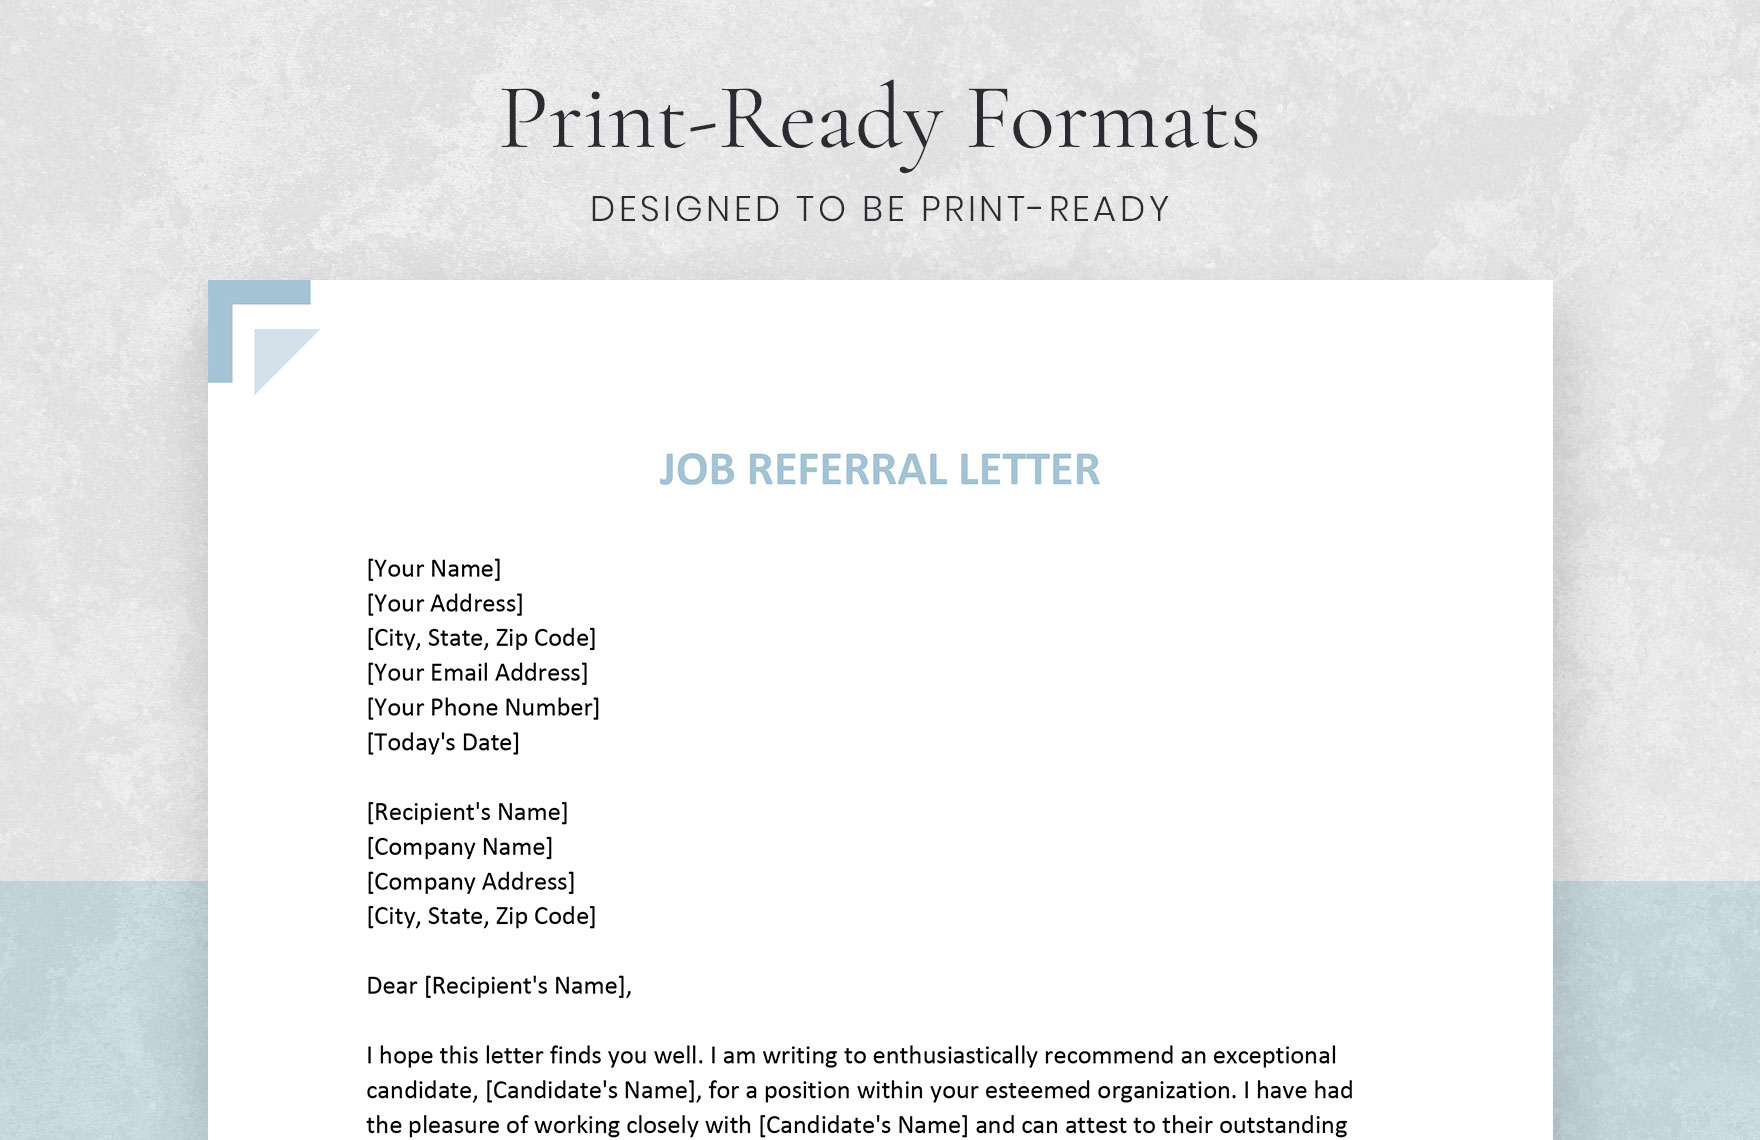 Job Referral Letter